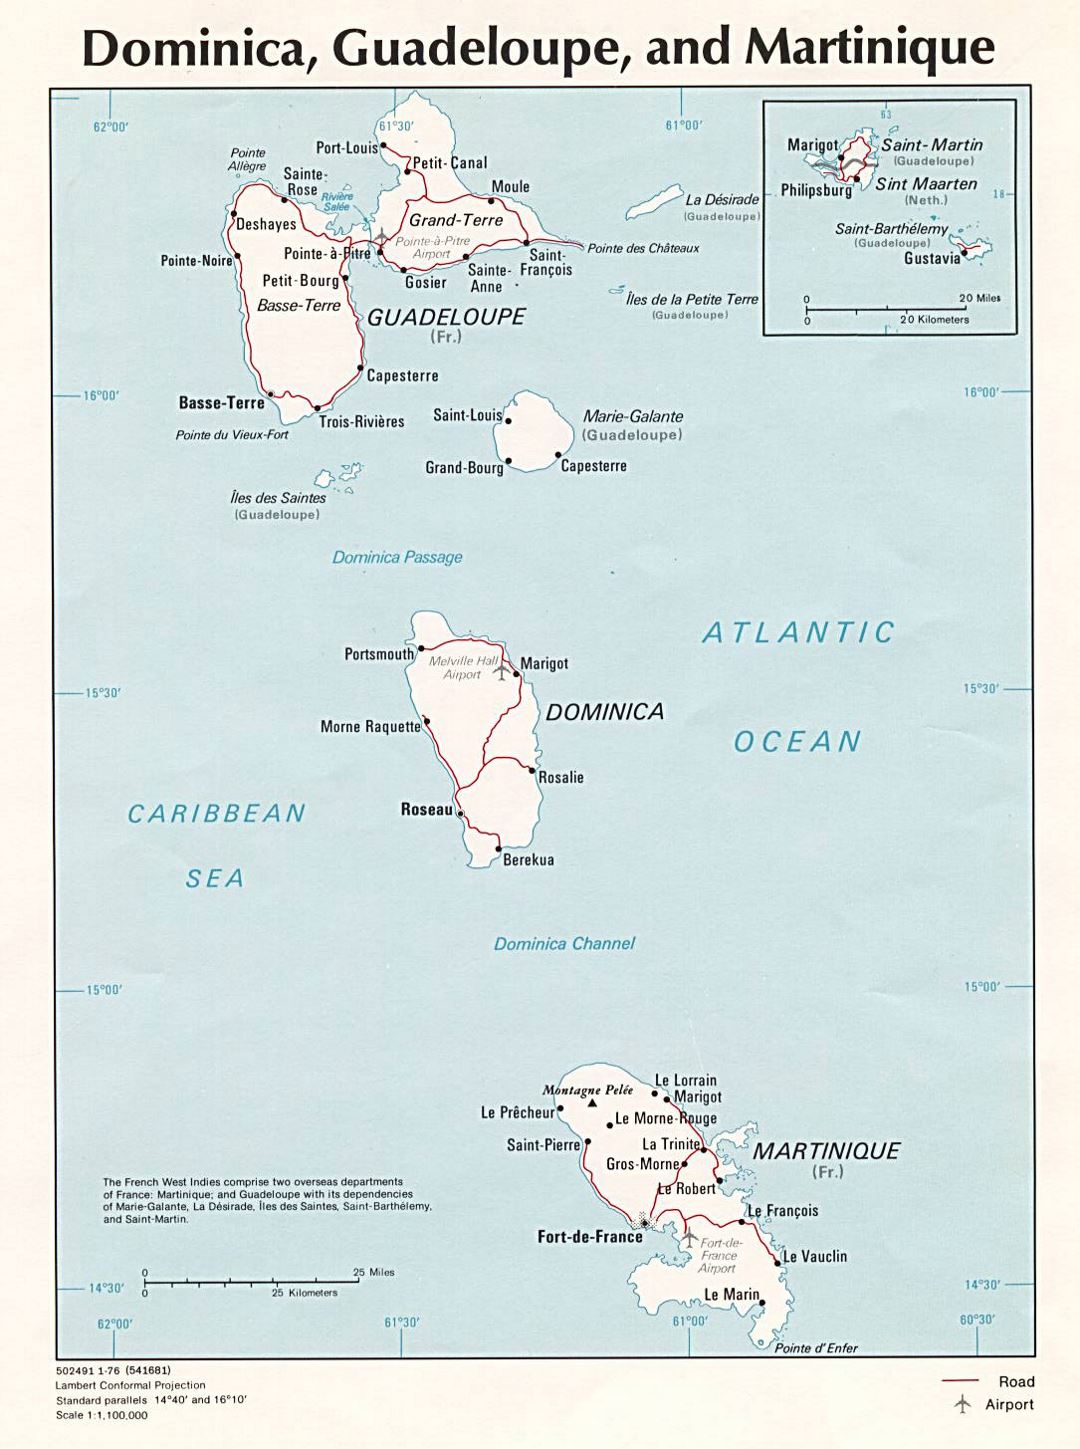 Большая политическая карта Доминики, Гваделупы и Мартиники с дорогами, городами и аэропортами - 1976